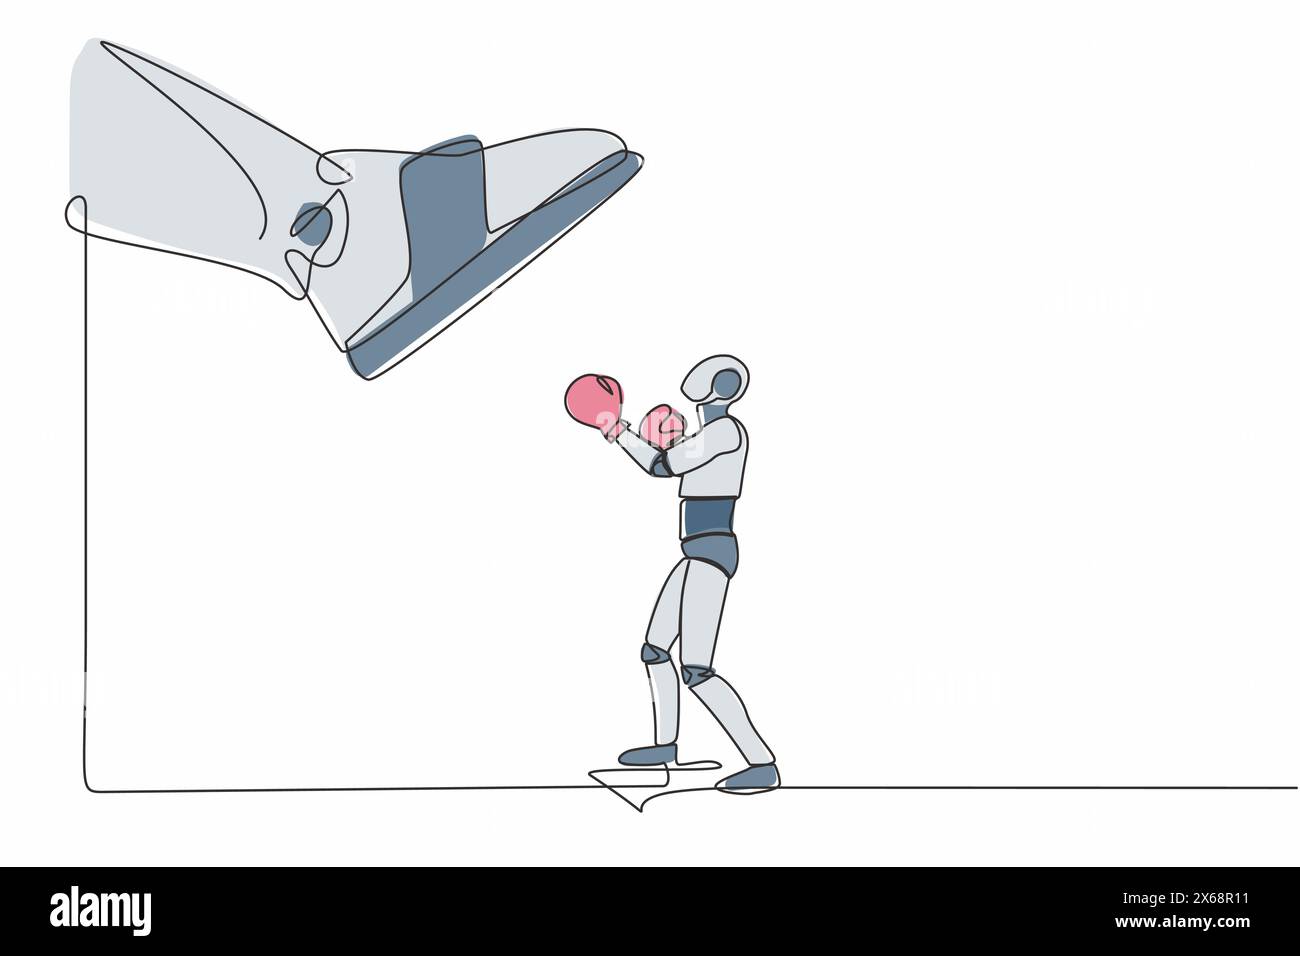 Robot dessinant une seule ligne poinçonnant uppercut sous une grosse poussée de pied. Robot contre autoritaire ou patron de colère. Développement technologique futur. Contin Illustration de Vecteur